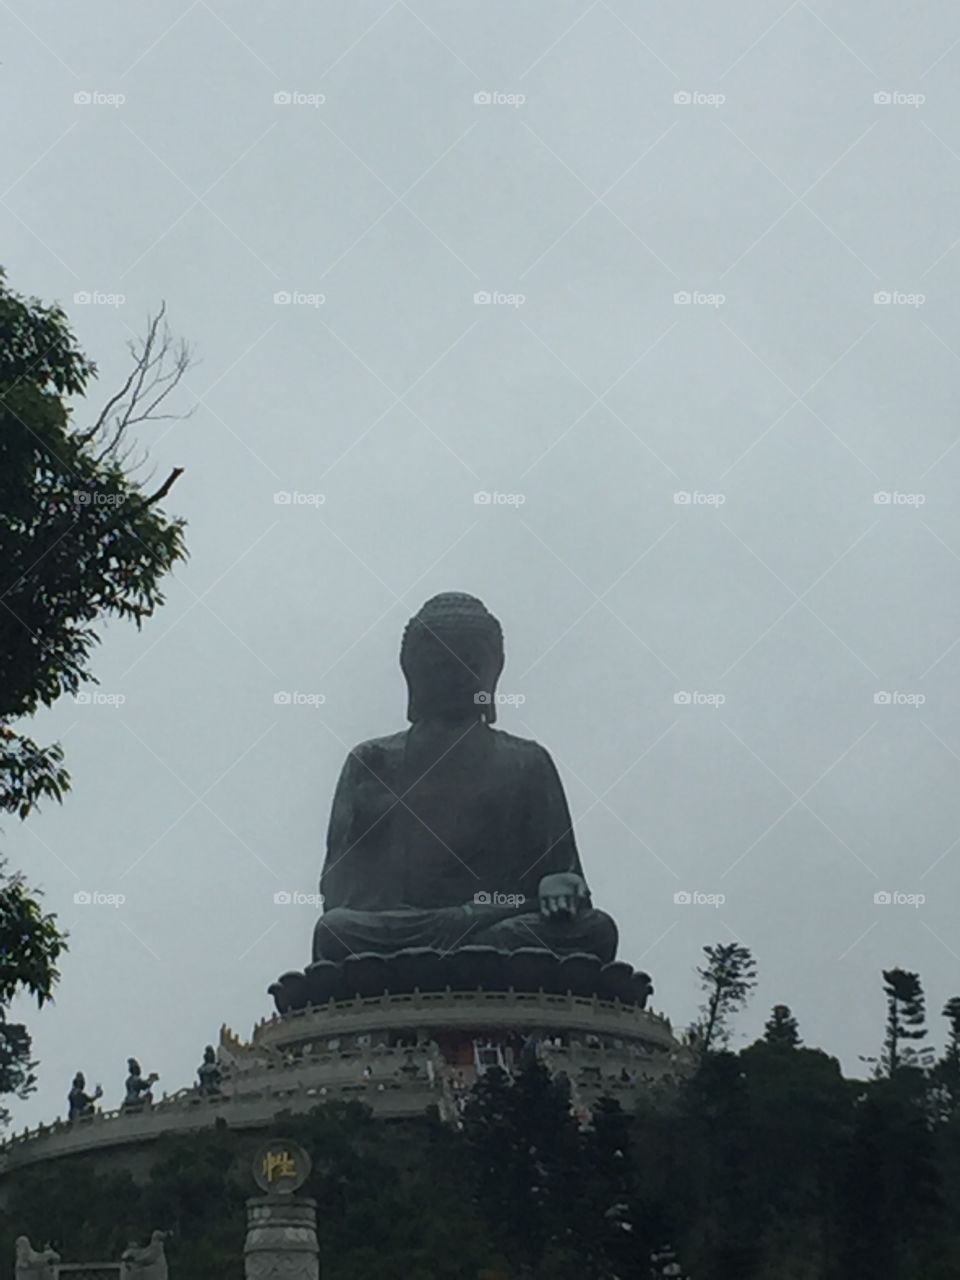 “Tian Tau Sacred Buddha Statue Hong Kong & Chinese Symbolic Statue. Ngong  Ping, Lantau Island, Hong Kong. Copyright Chelsea Merkley Photography 2019. “